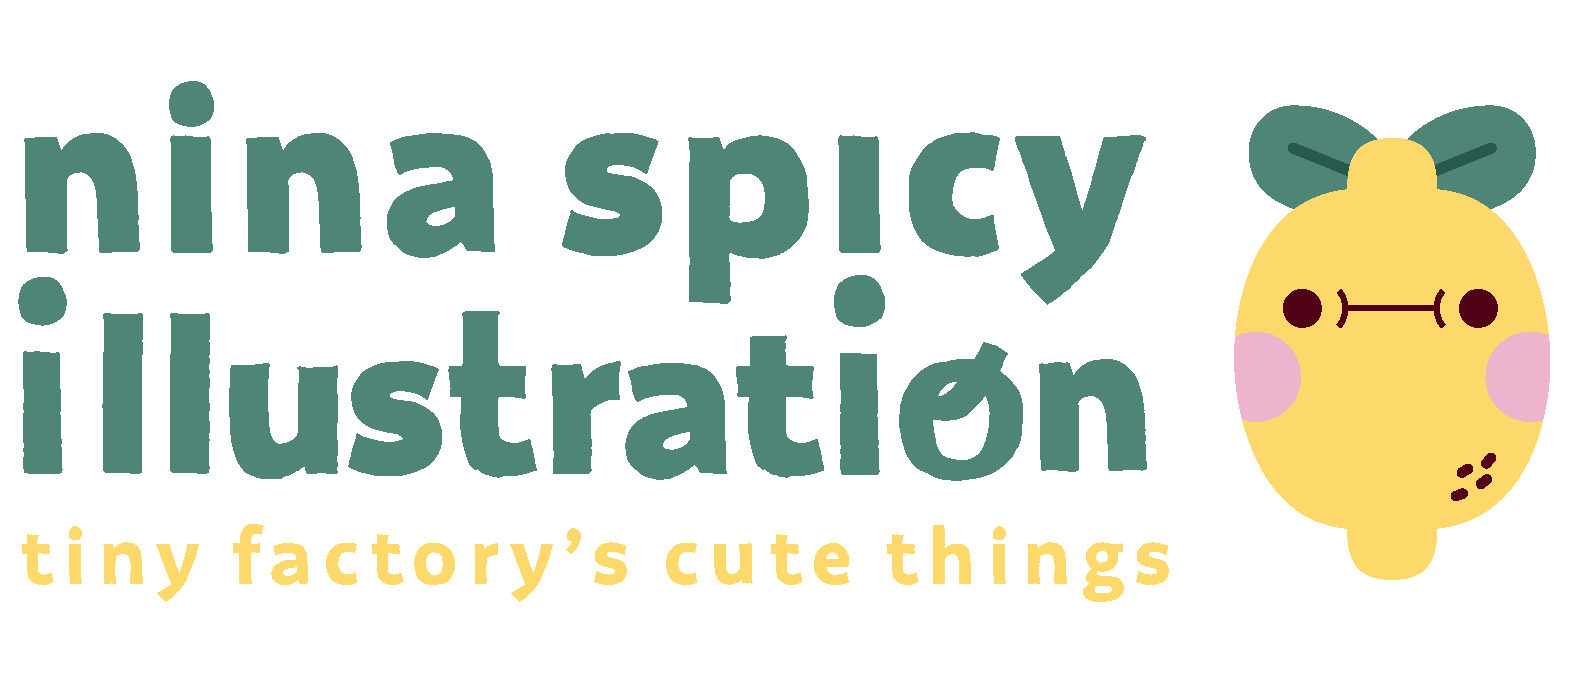 Nina Spicy